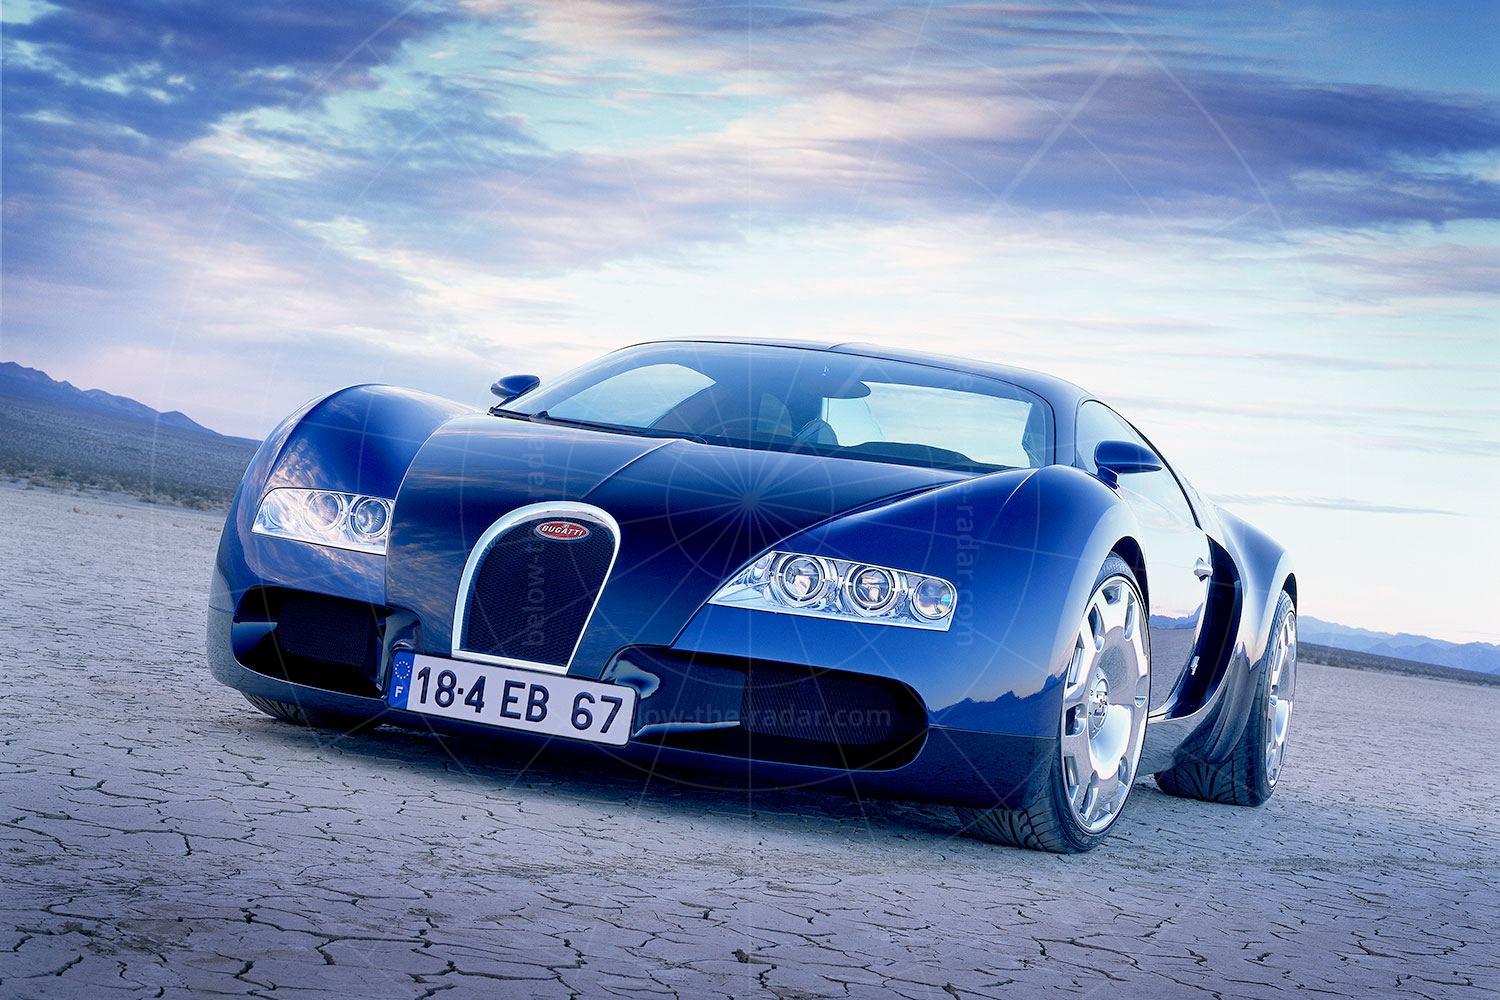 Bugatti EB 18/4 Veyron concept Pic: Bugatti | 